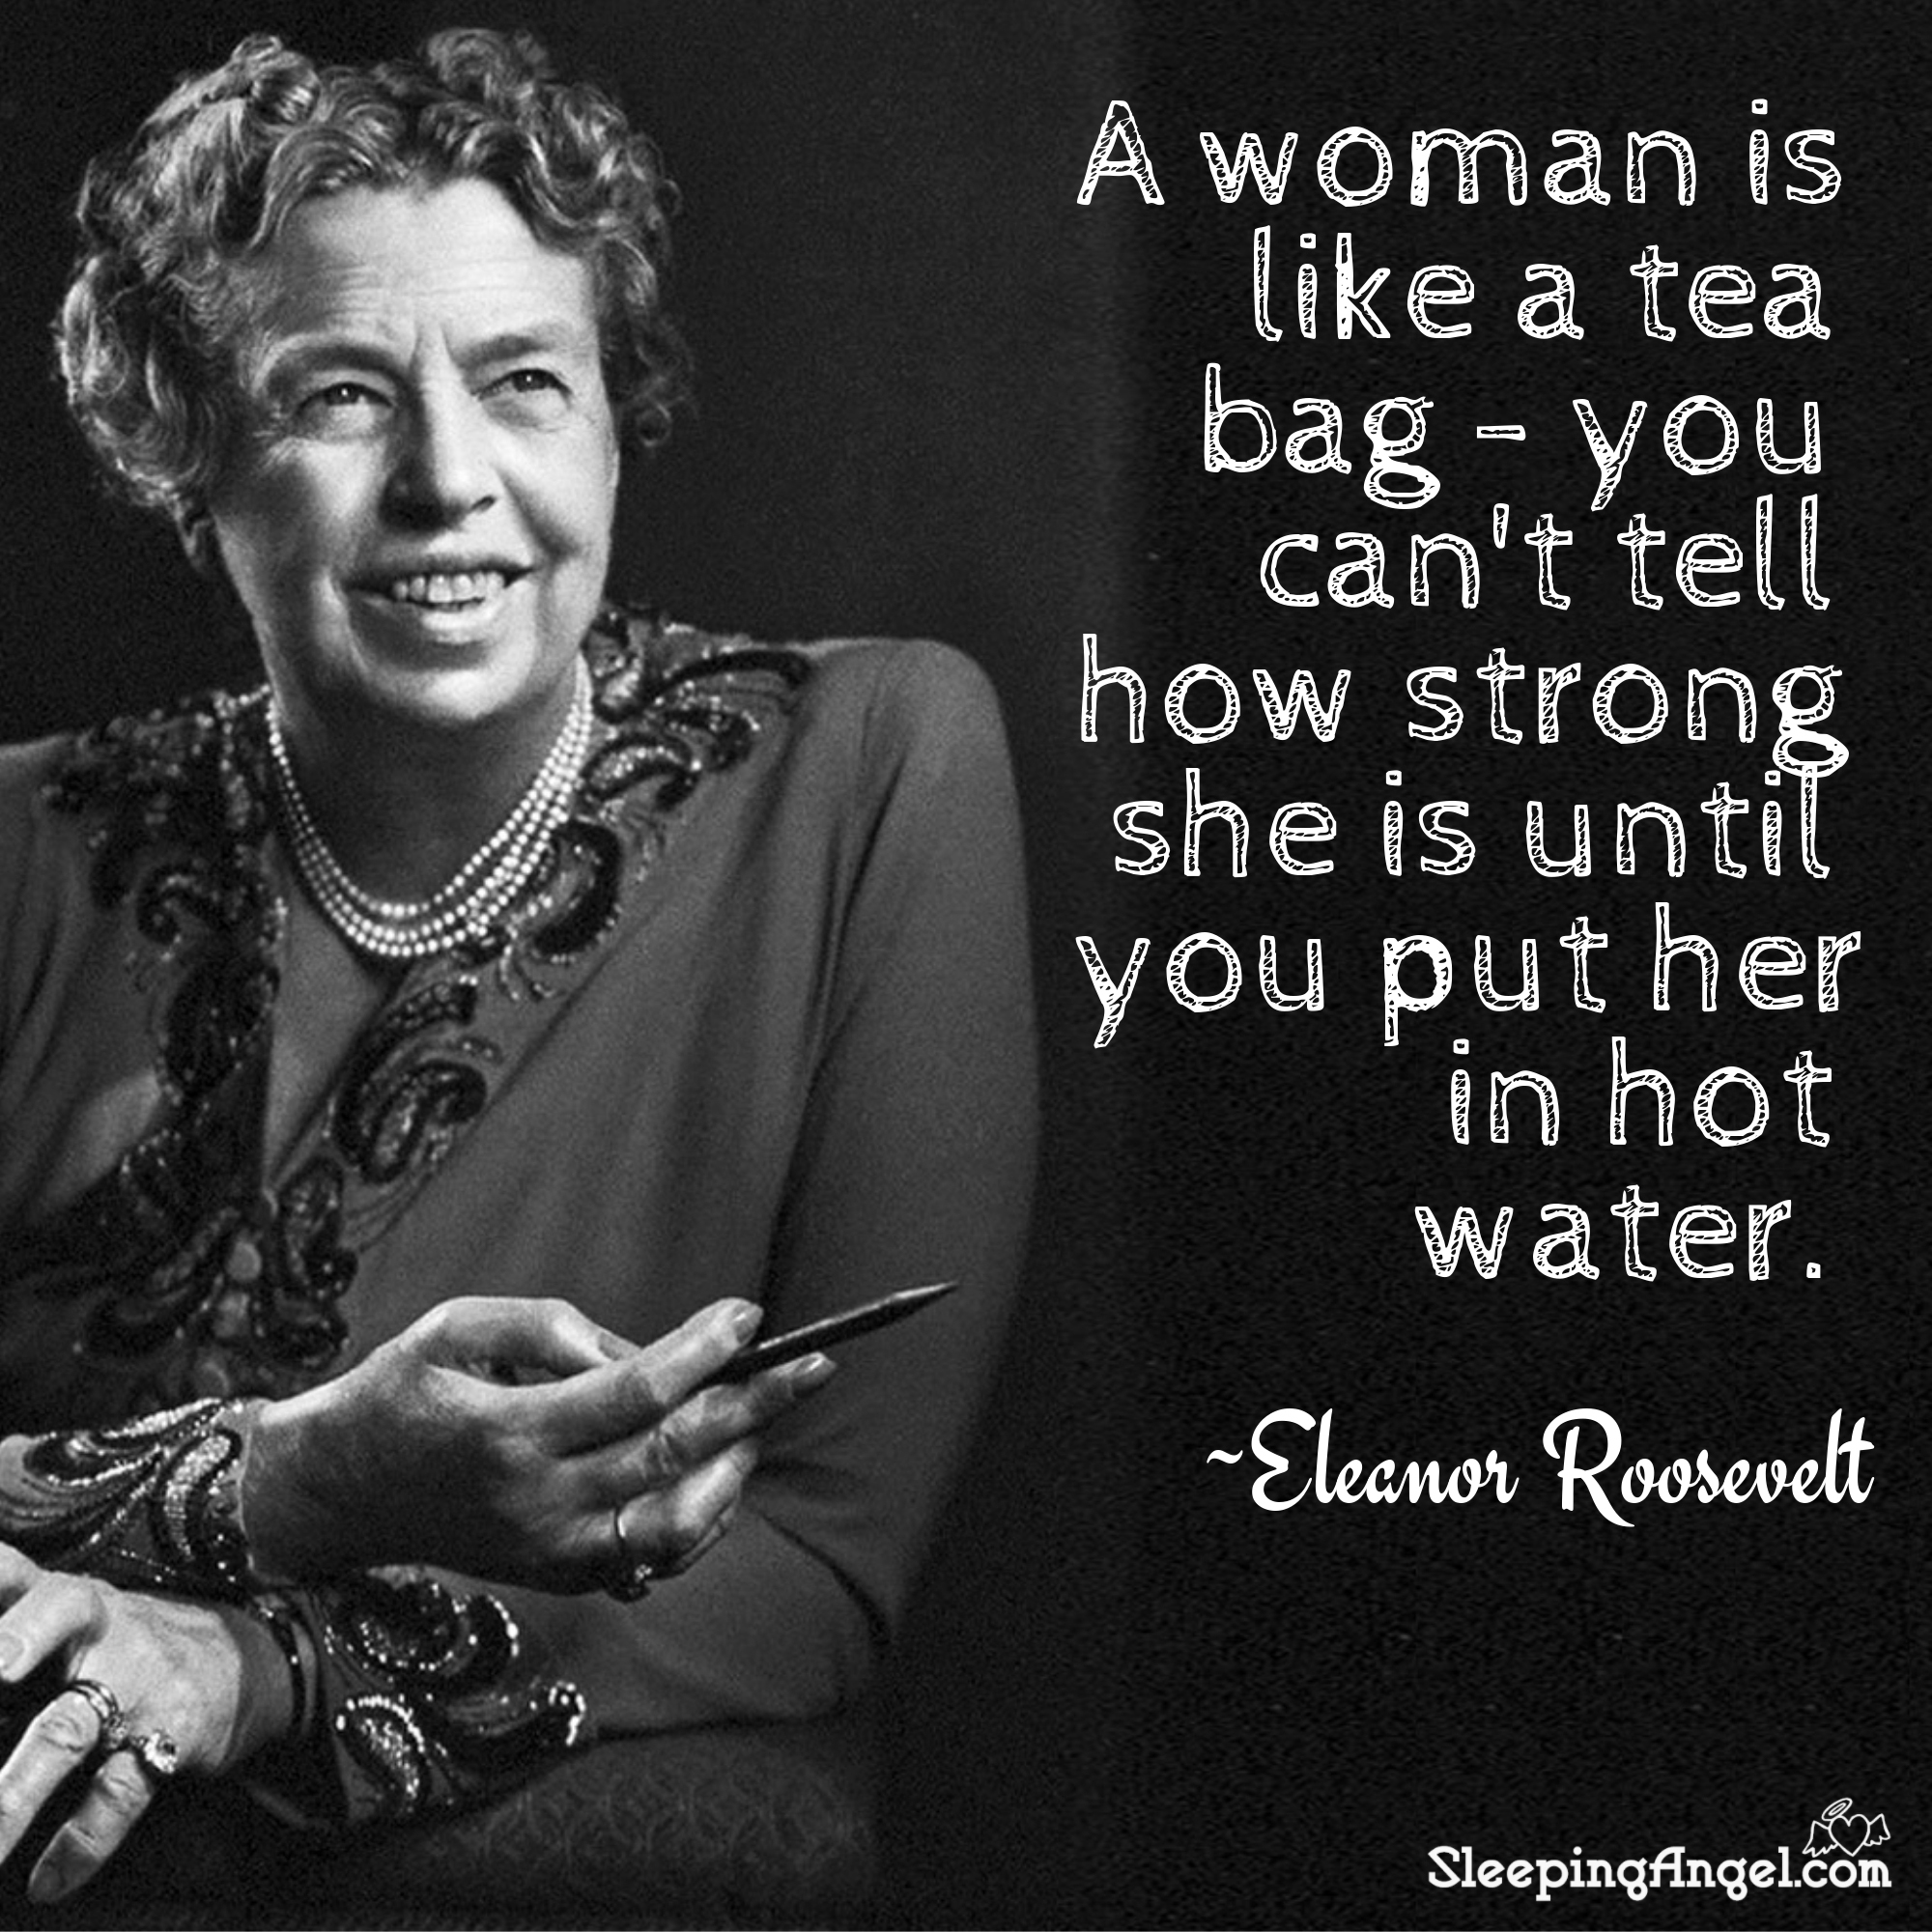 Eleanor Roosevelt Quote